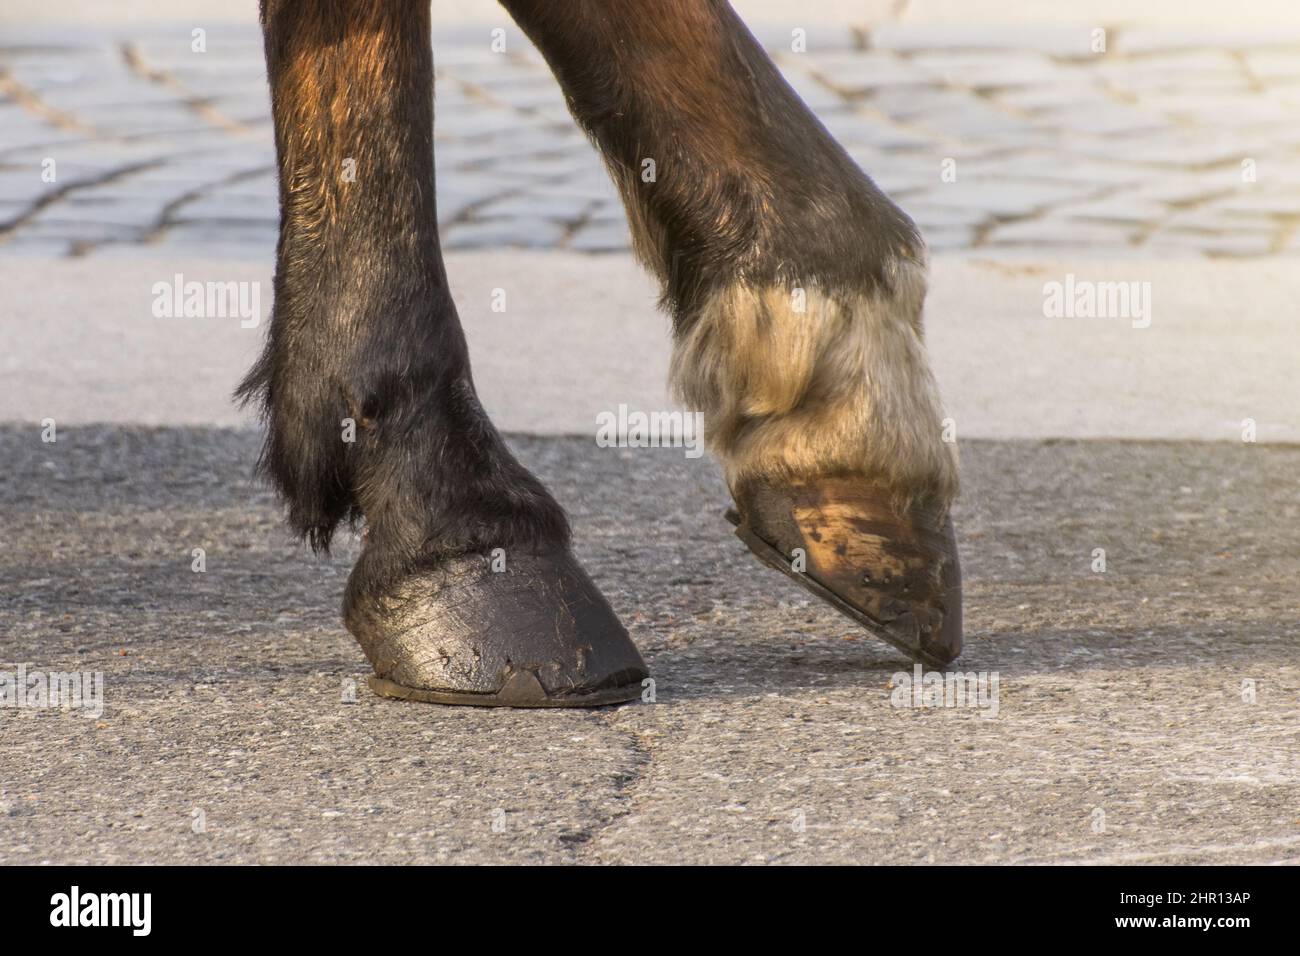 Due gambe di uno zoccolo di cavallo, una gamba sollevata sopra la superficie Foto Stock